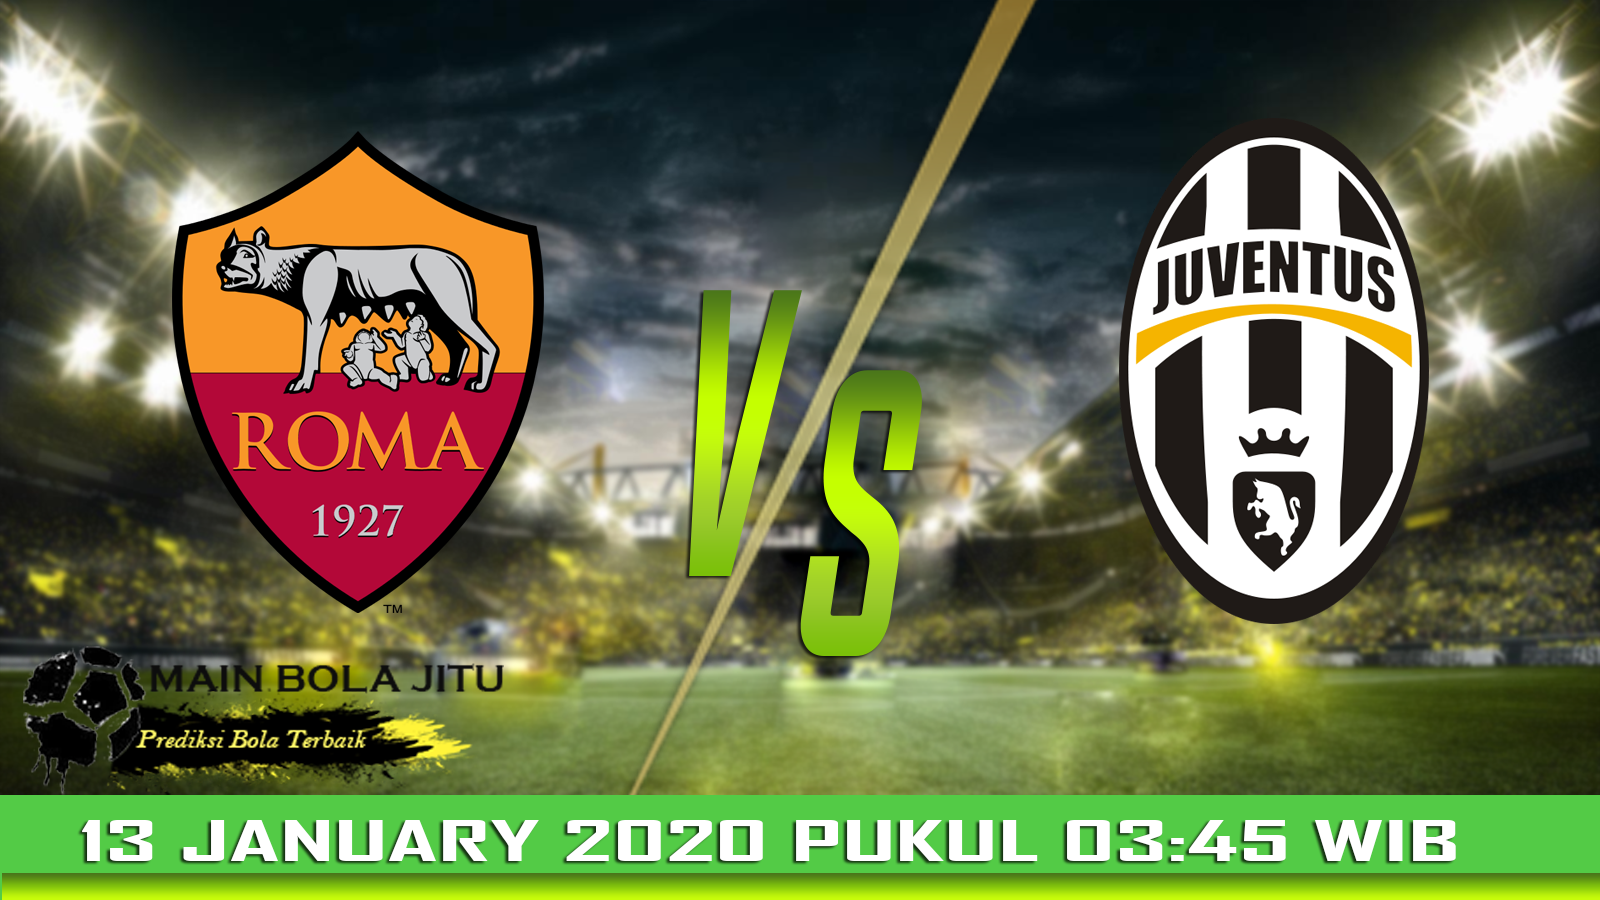 Prediksi Skor AS.Roma vs Juventus tanggal 13-01-2020